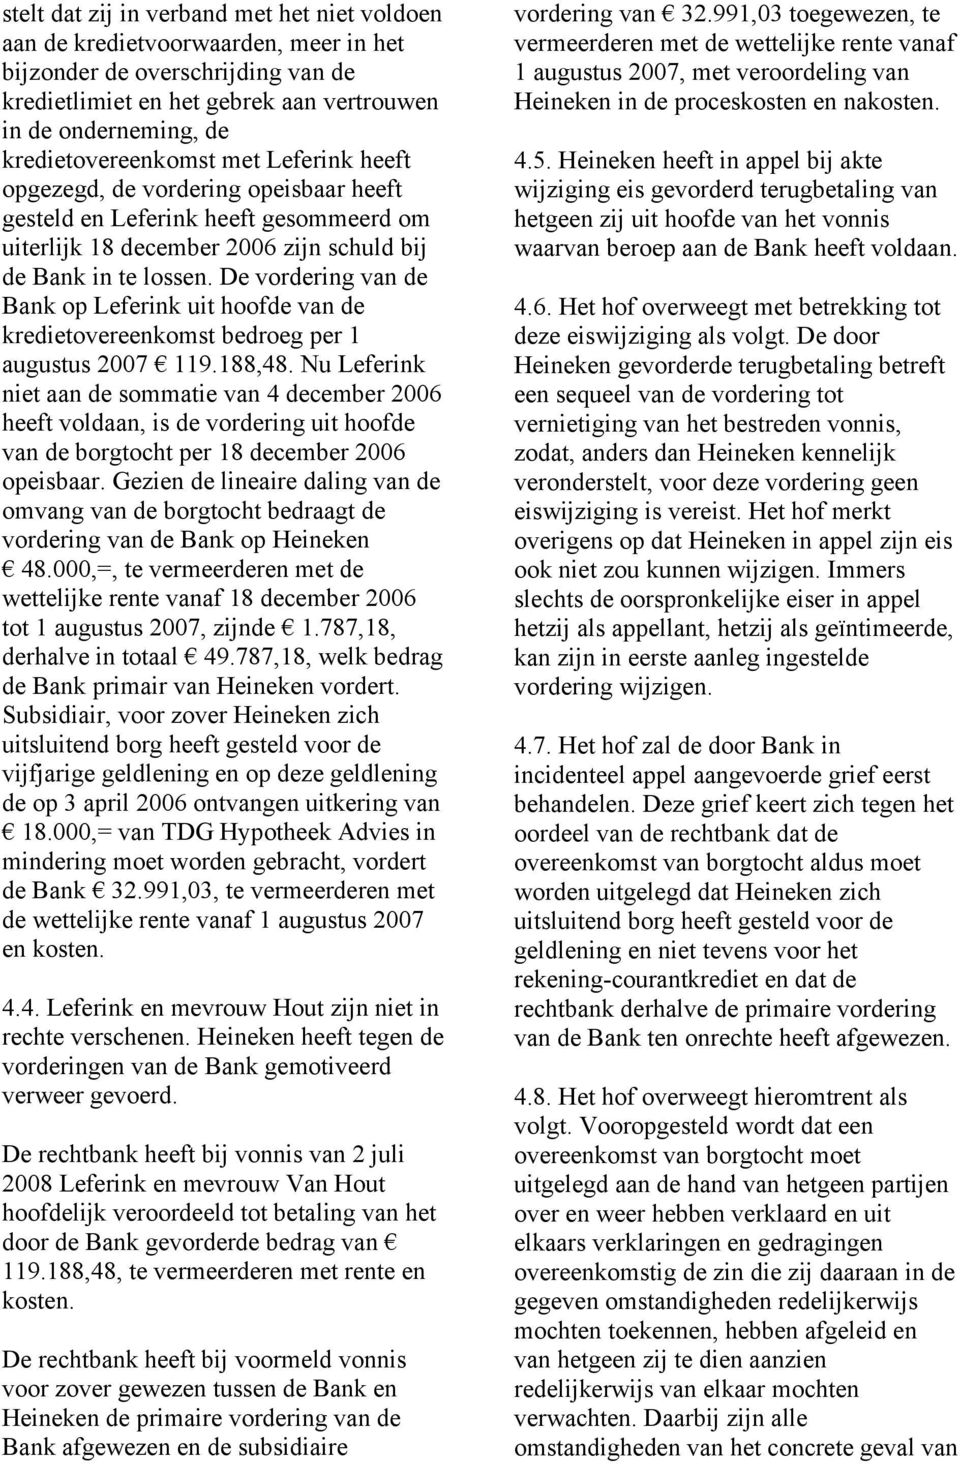 De vordering van de Bank op Leferink uit hoofde van de kredietovereenkomst bedroeg per 1 augustus 2007 119.188,48.